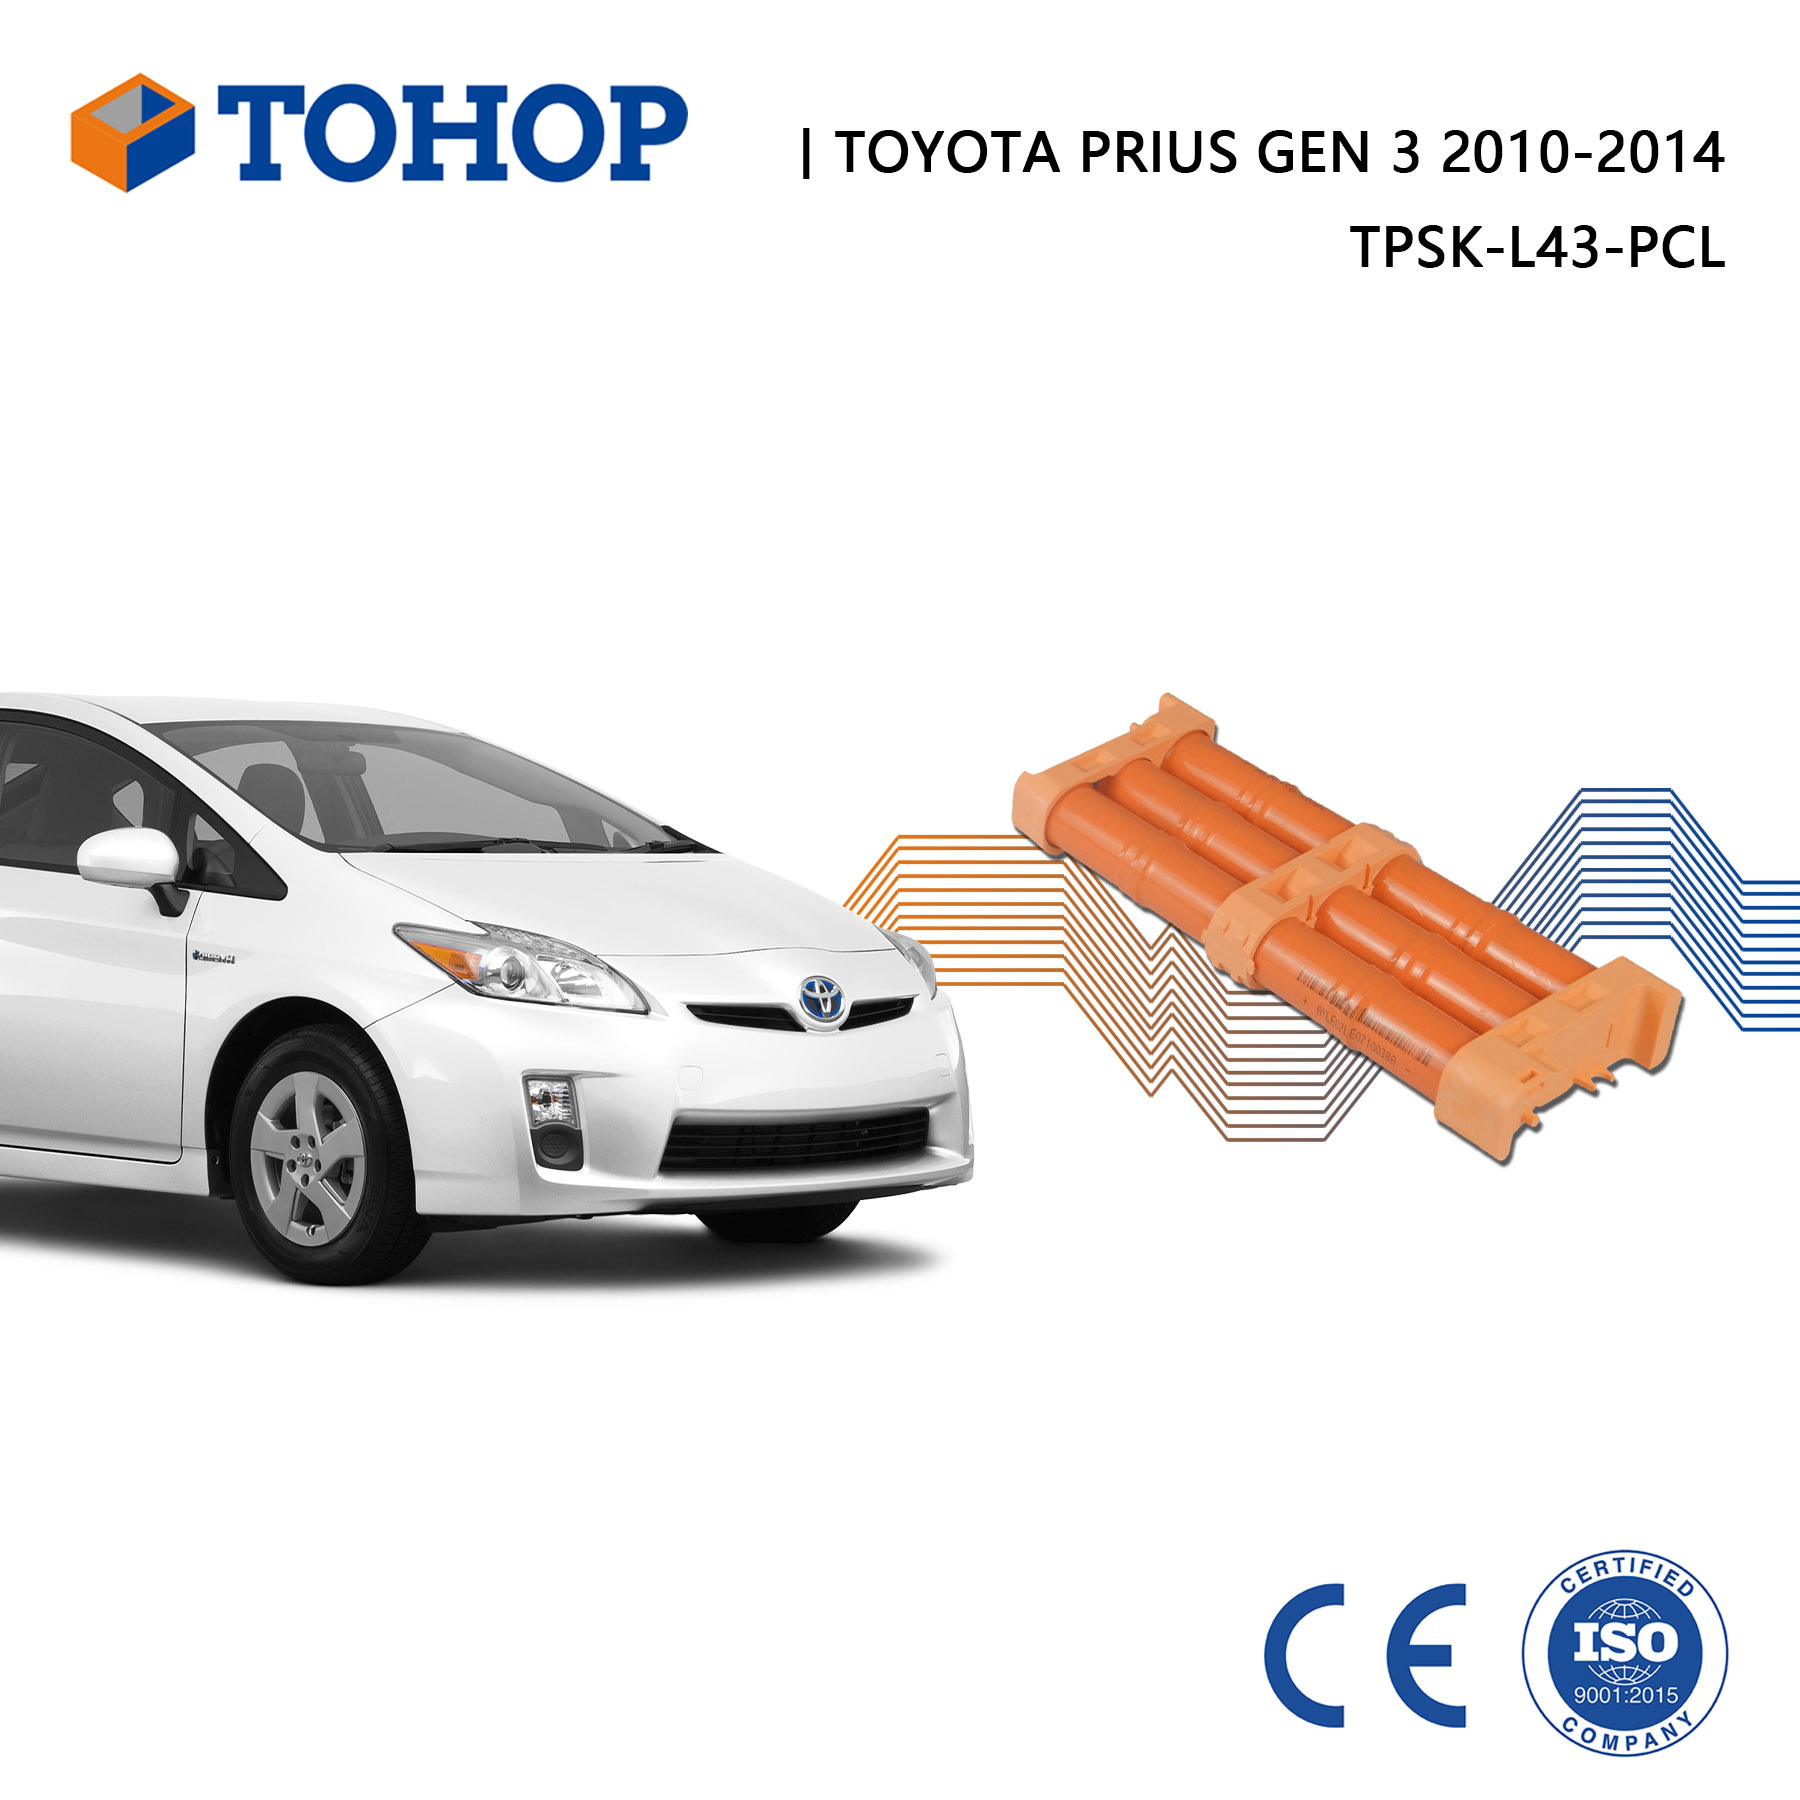 Großhandel Autoersatz 201,6 V 6,5 Ah Hybridbatterie für Prius XW30 2010-2014 für Prius Gen.3